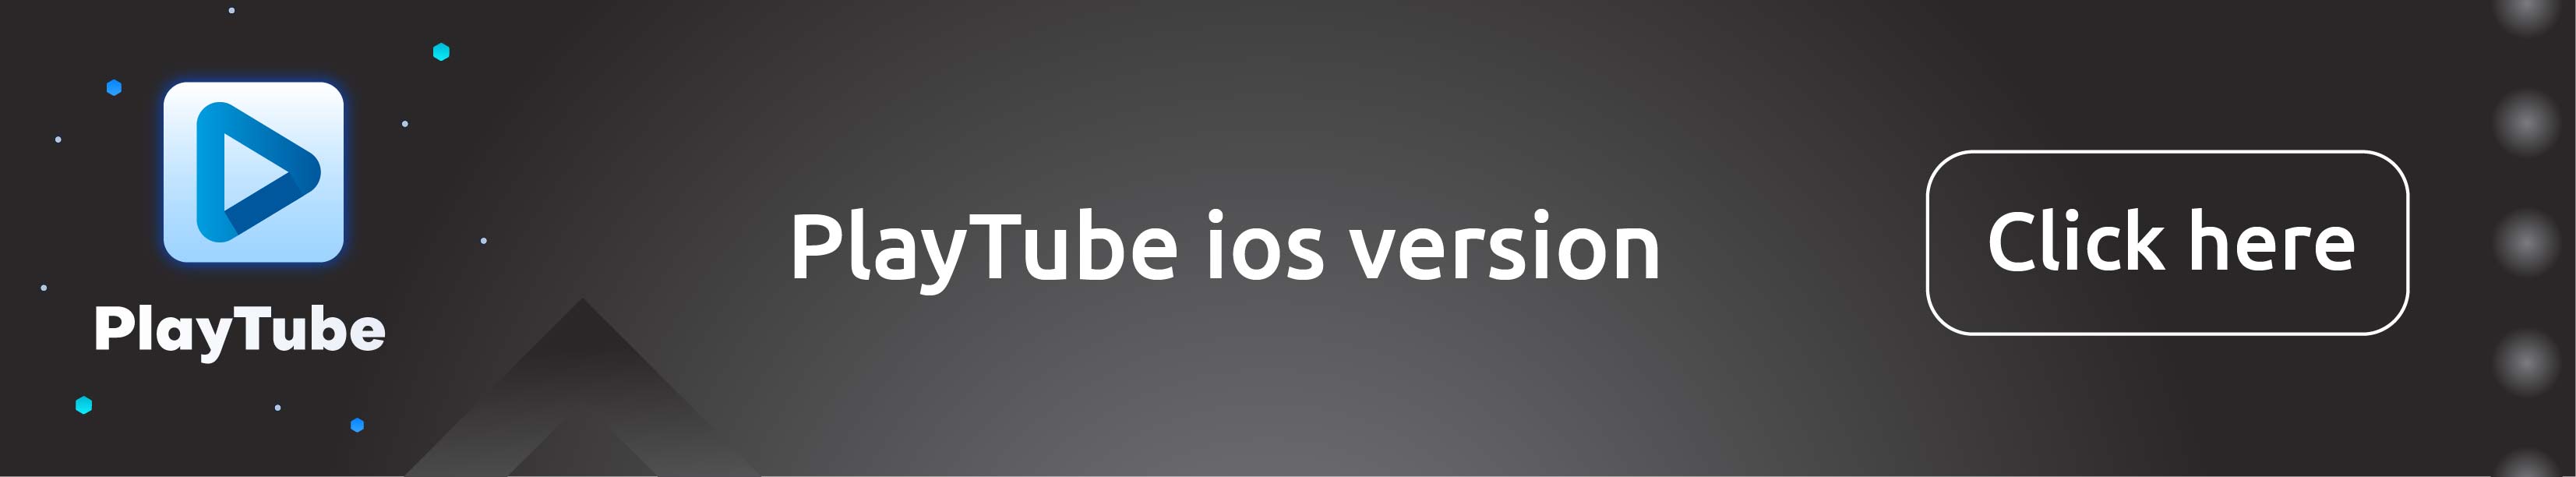 PlayTube - Le CMS vidéo PHP ultime et la plate-forme de partage vidéo - 3